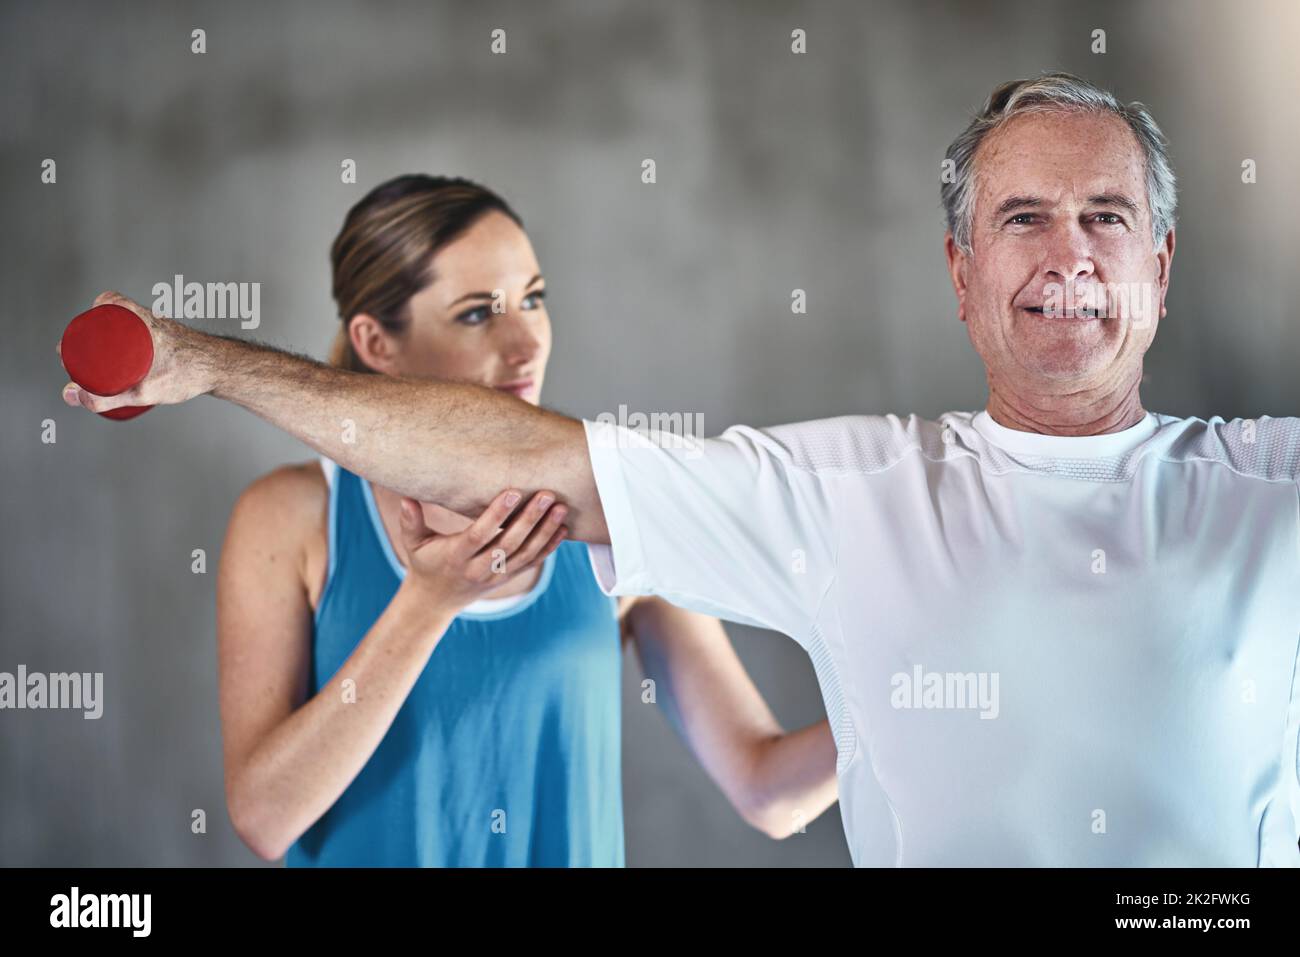 Zeit, aktiv am Leben teilzuhaben. Aufnahme eines älteren Mannes mit Gewichten mit Hilfe eines Physiotherapeuten. Stockfoto